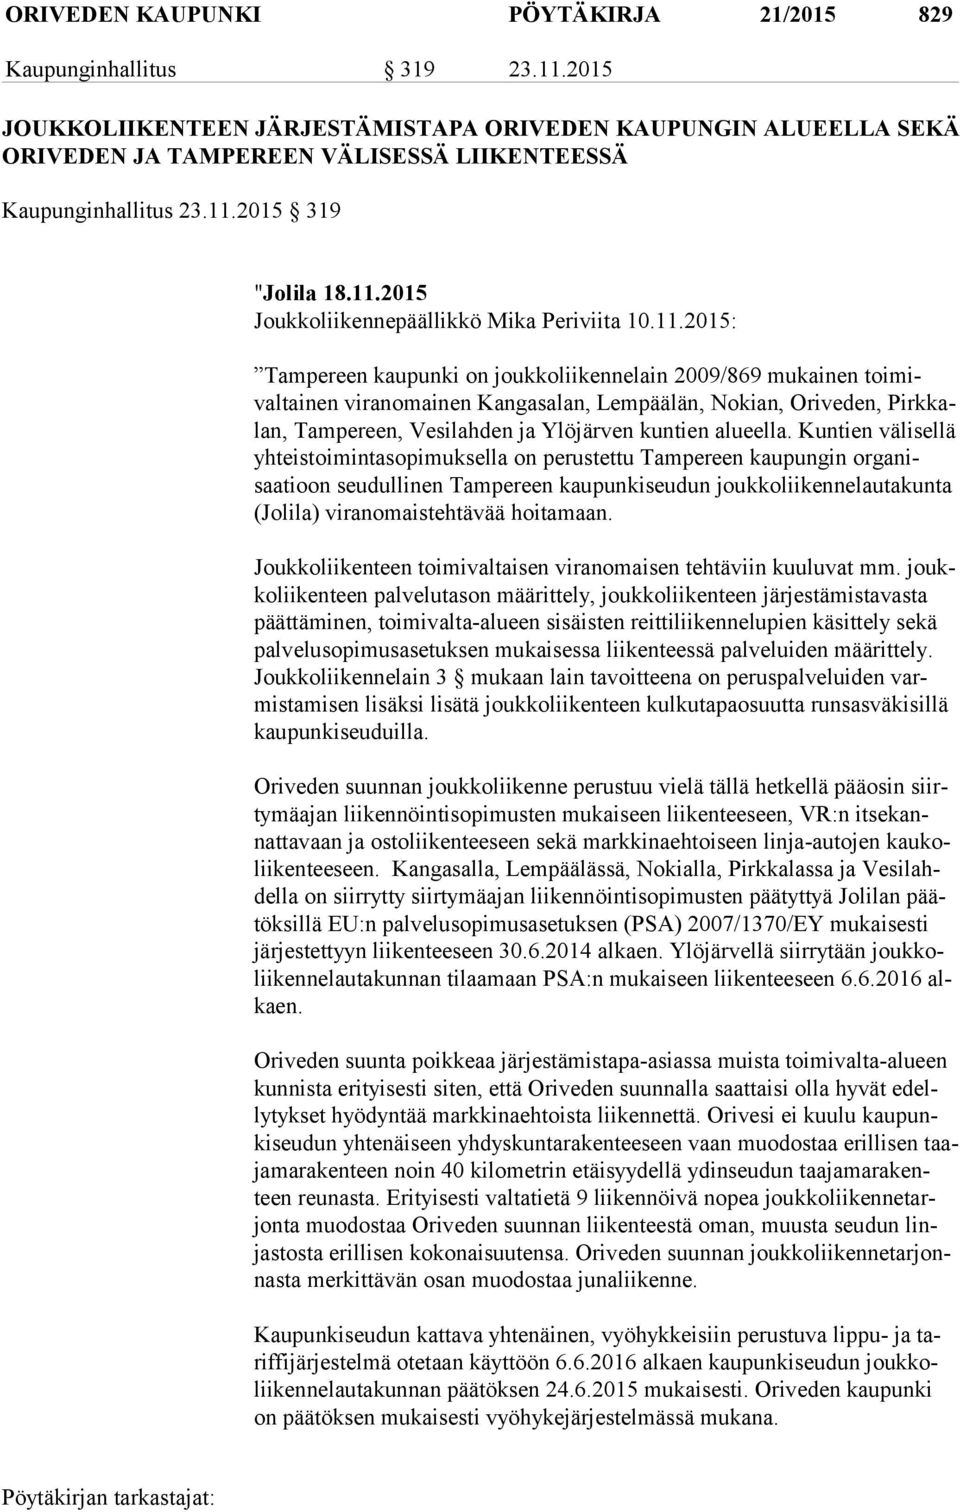 11.2015: Tampereen kaupunki on joukkoliikennelain 2009/869 mukainen toi mivaltai nen viranomainen Kangasalan, Lempäälän, Nokian, Oriveden, Pirk kalan, Tampereen, Vesilahden ja Ylöjärven kuntien